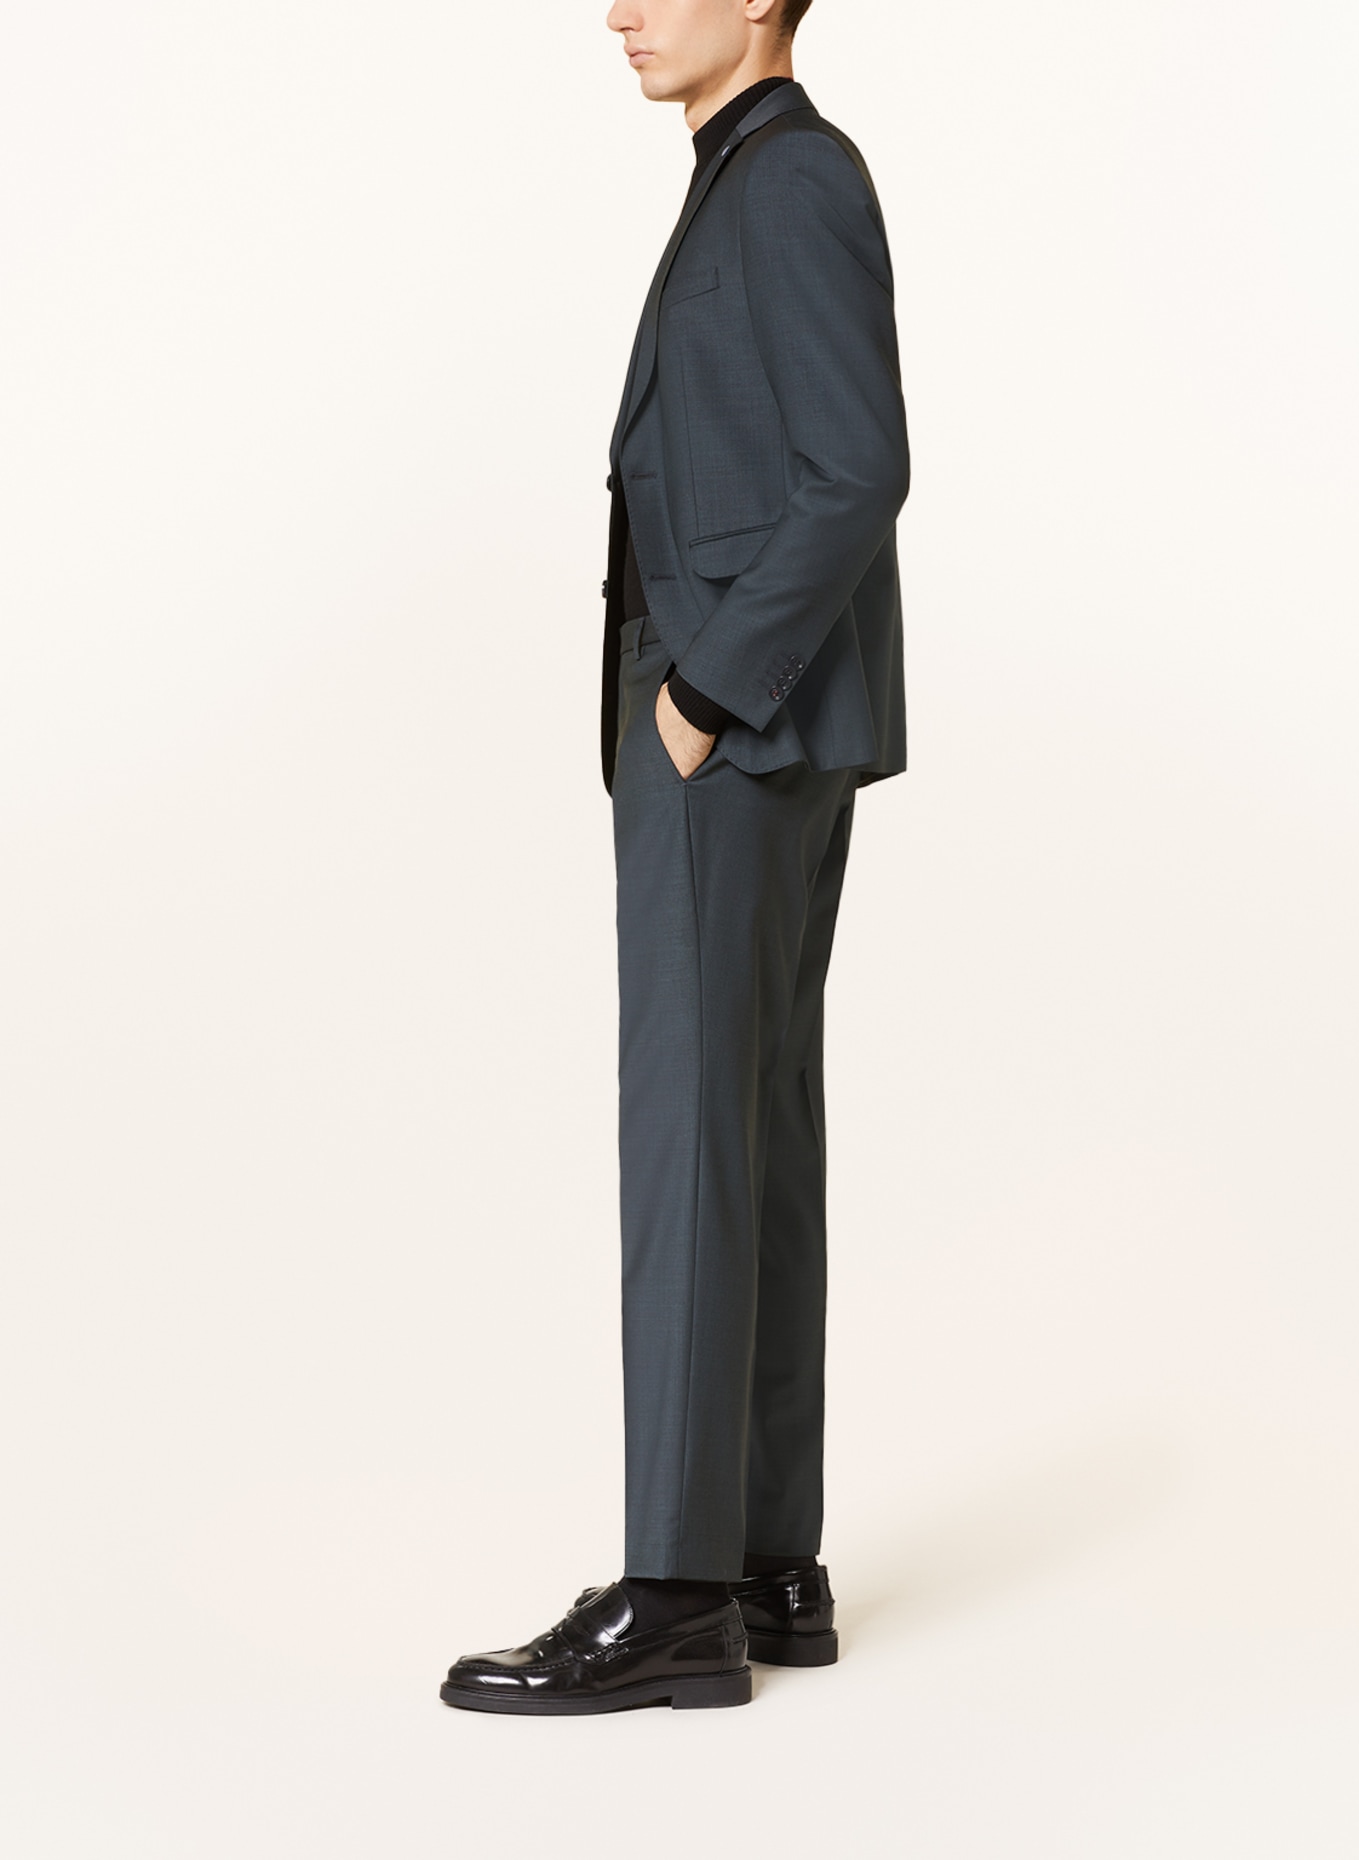 CG - CLUB of GENTS Suit trousers COLE slim fit, Color: 53 gruen dunkel (Image 5)